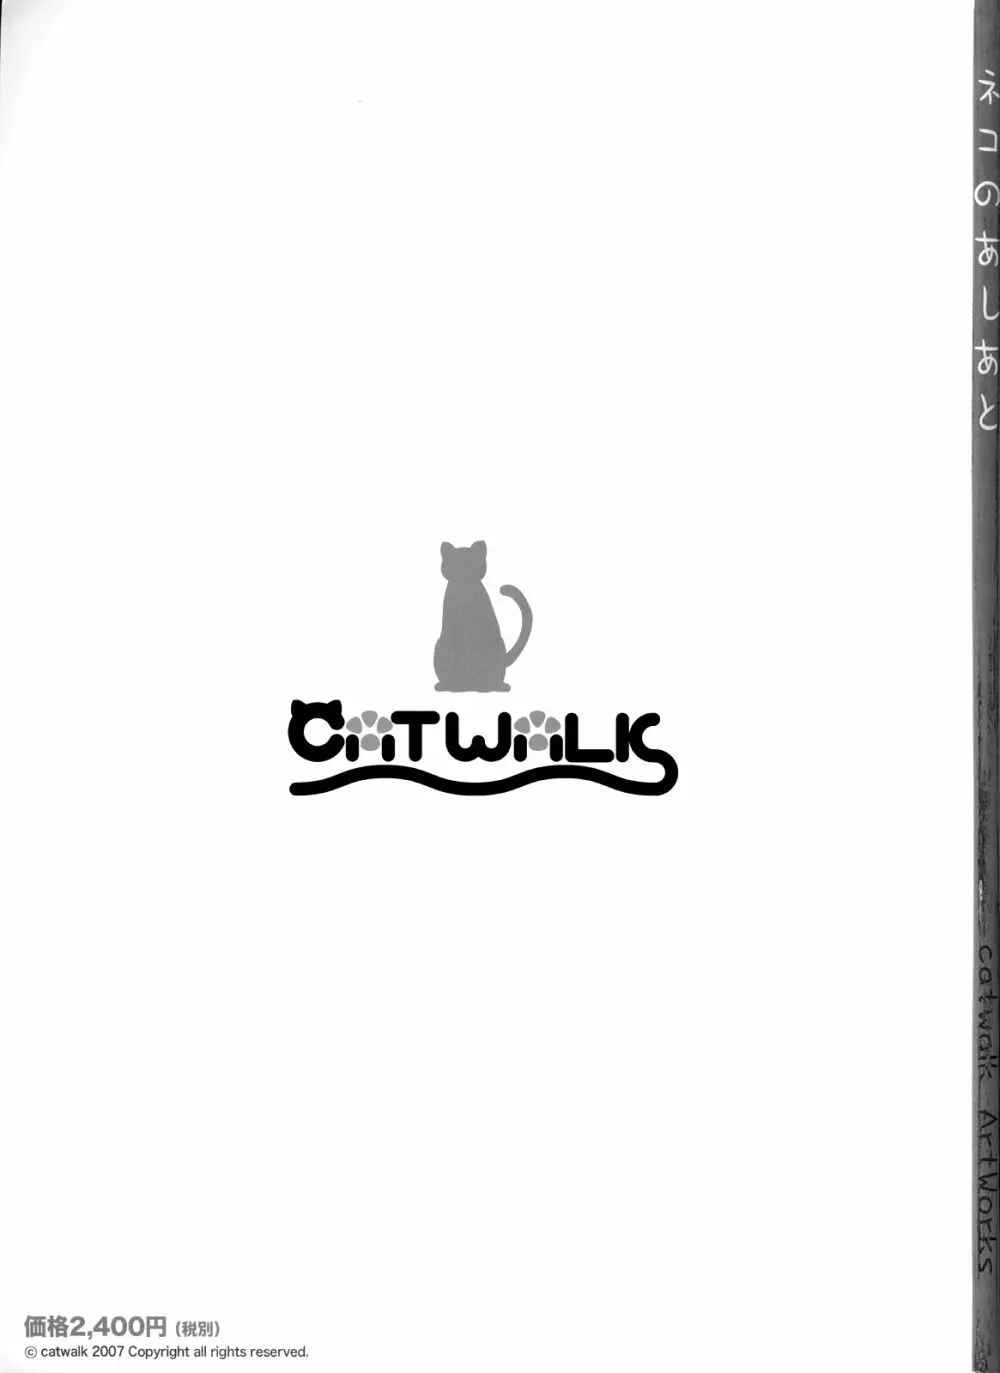 catwalk ArtWorks -ネコのあしあと- 3ページ